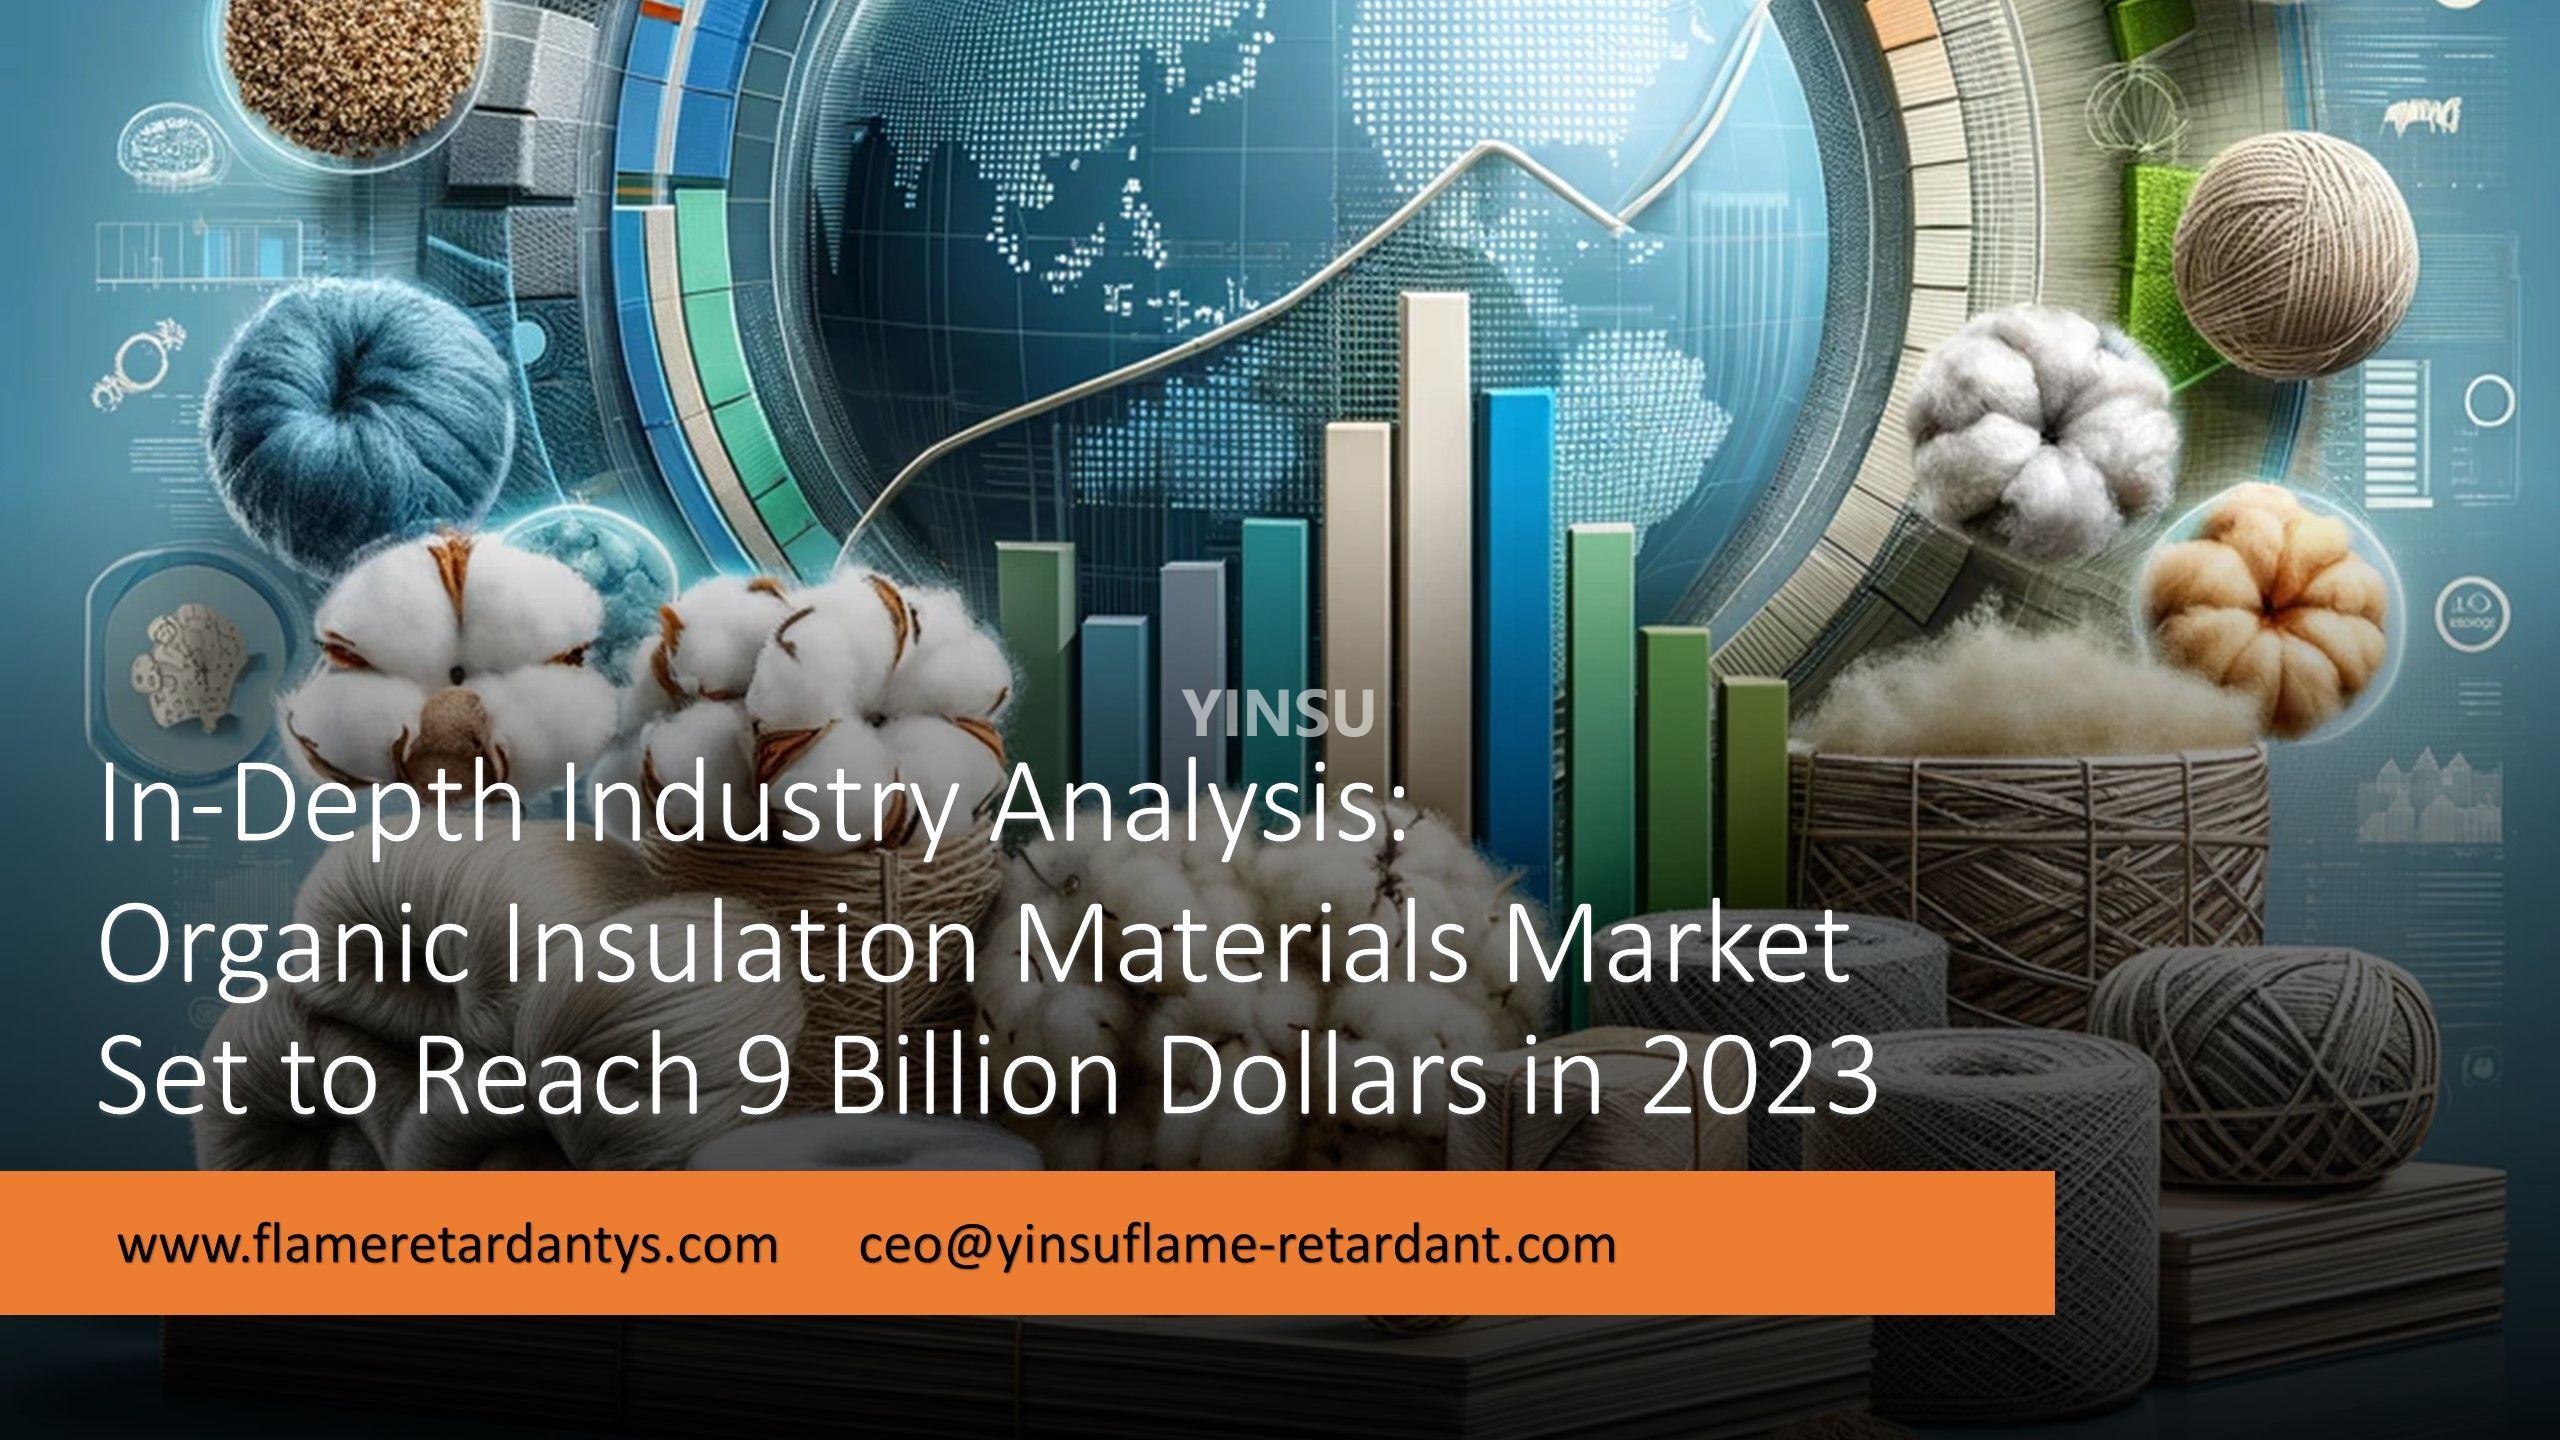 3.5 Analyse approfondie de l’industrie Le marché des matériaux d’isolation organiques devrait atteindre 9 milliards de dollars en 2023